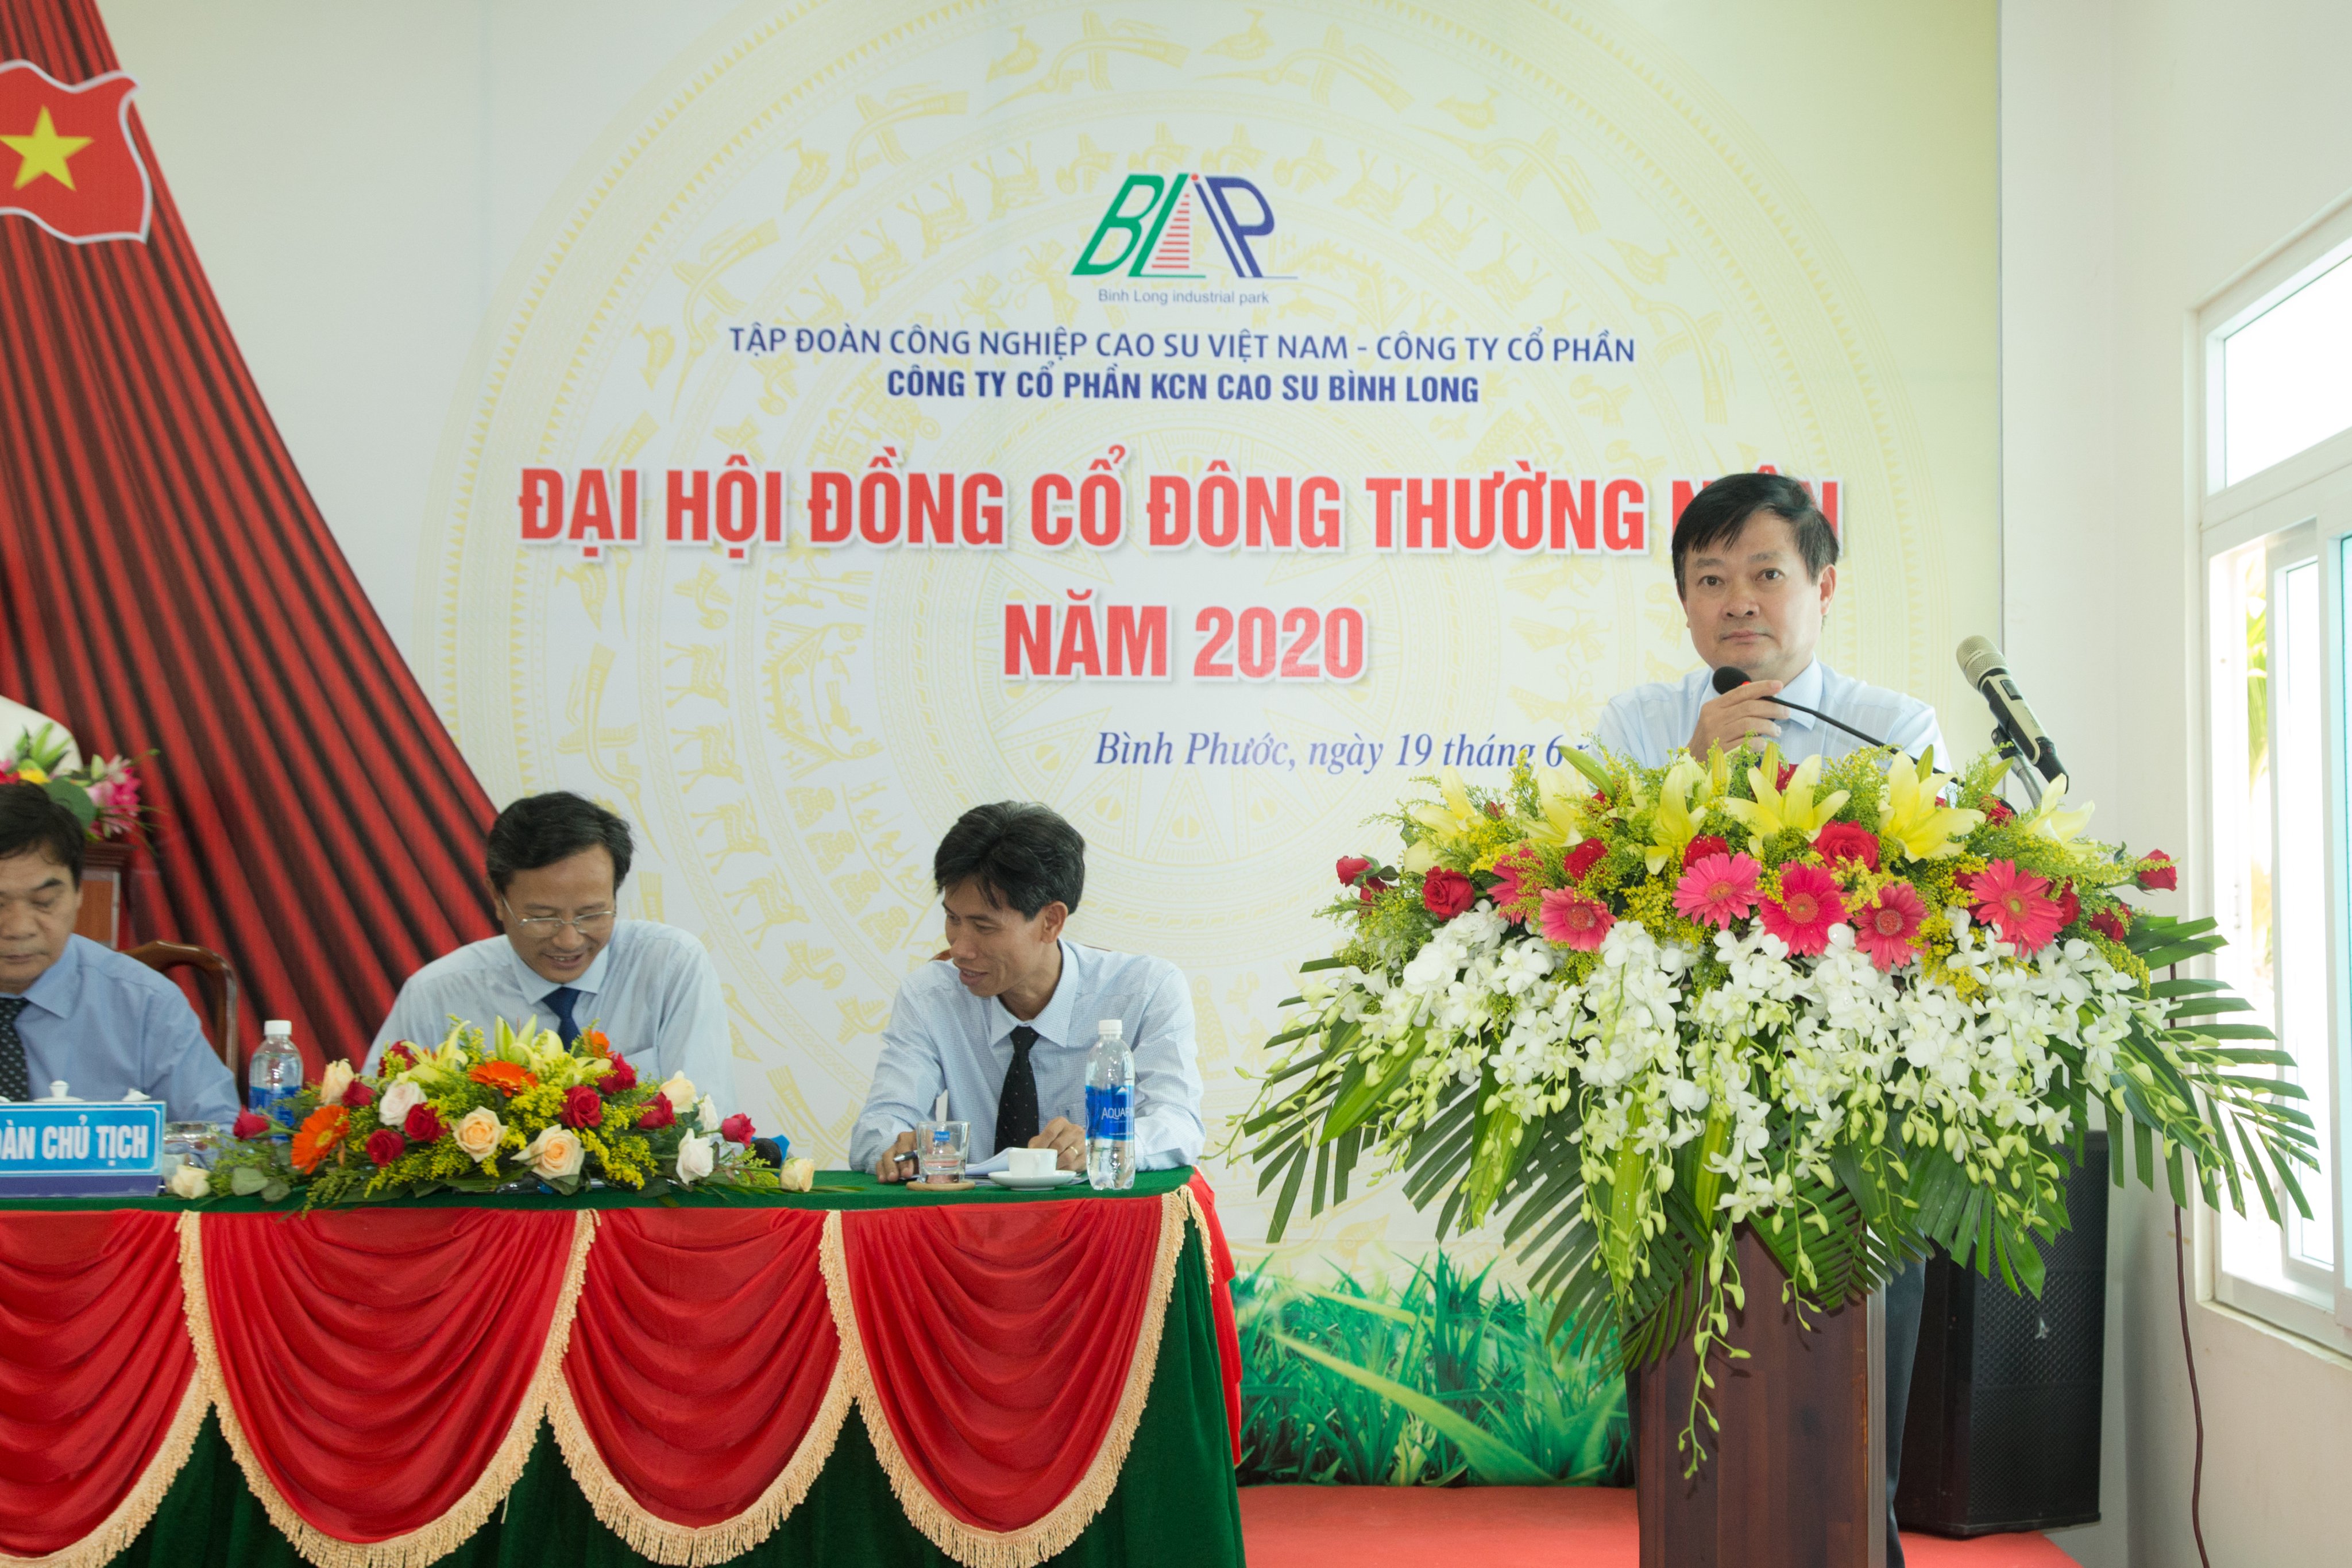 Ông Huỳnh Văn Bảo - Tổng giám đốc Tập đoàn Công nghiệp Cao su Việt Nam phát biểu chỉ đạo Đại hội